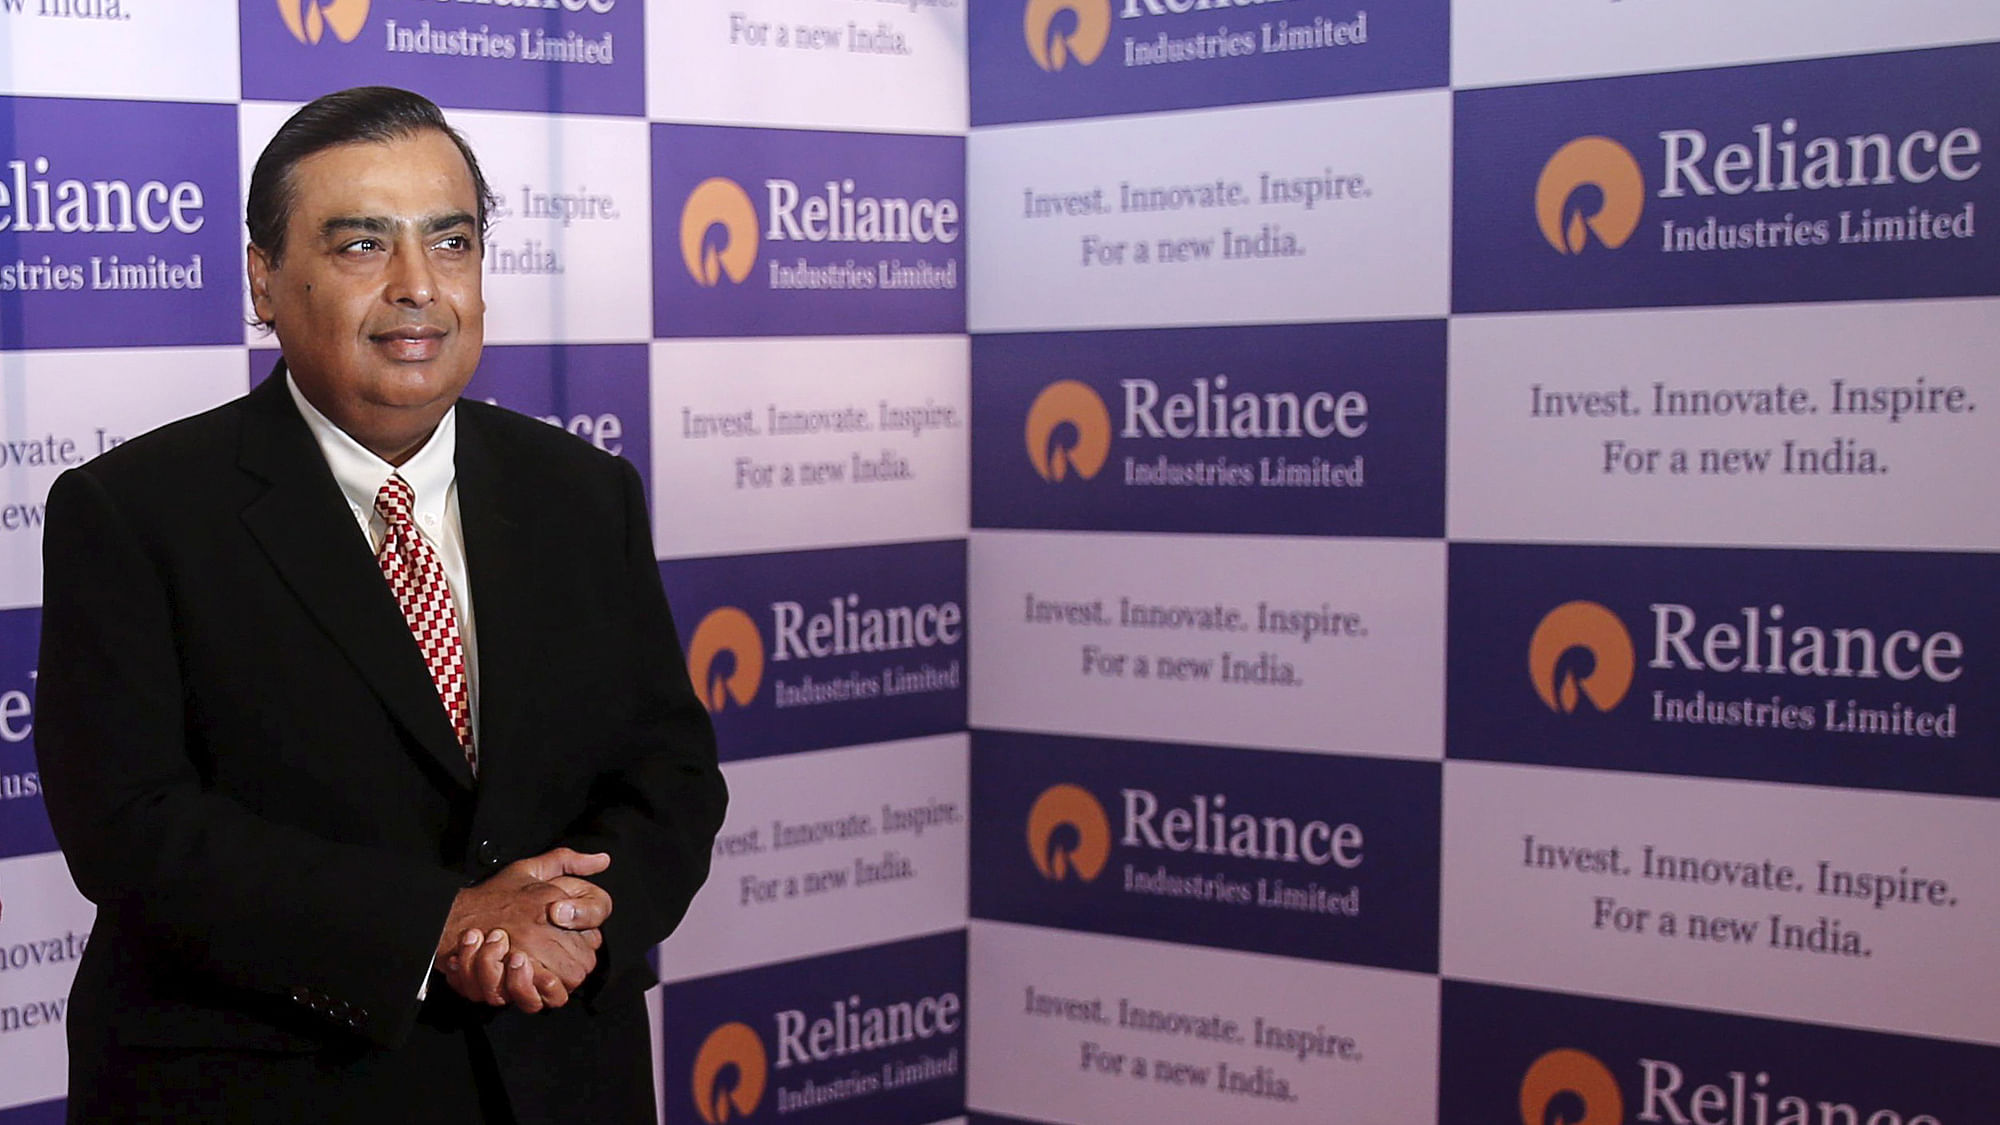 File photo of Mukesh Ambani, Chairman of Reliance Industries Limited.